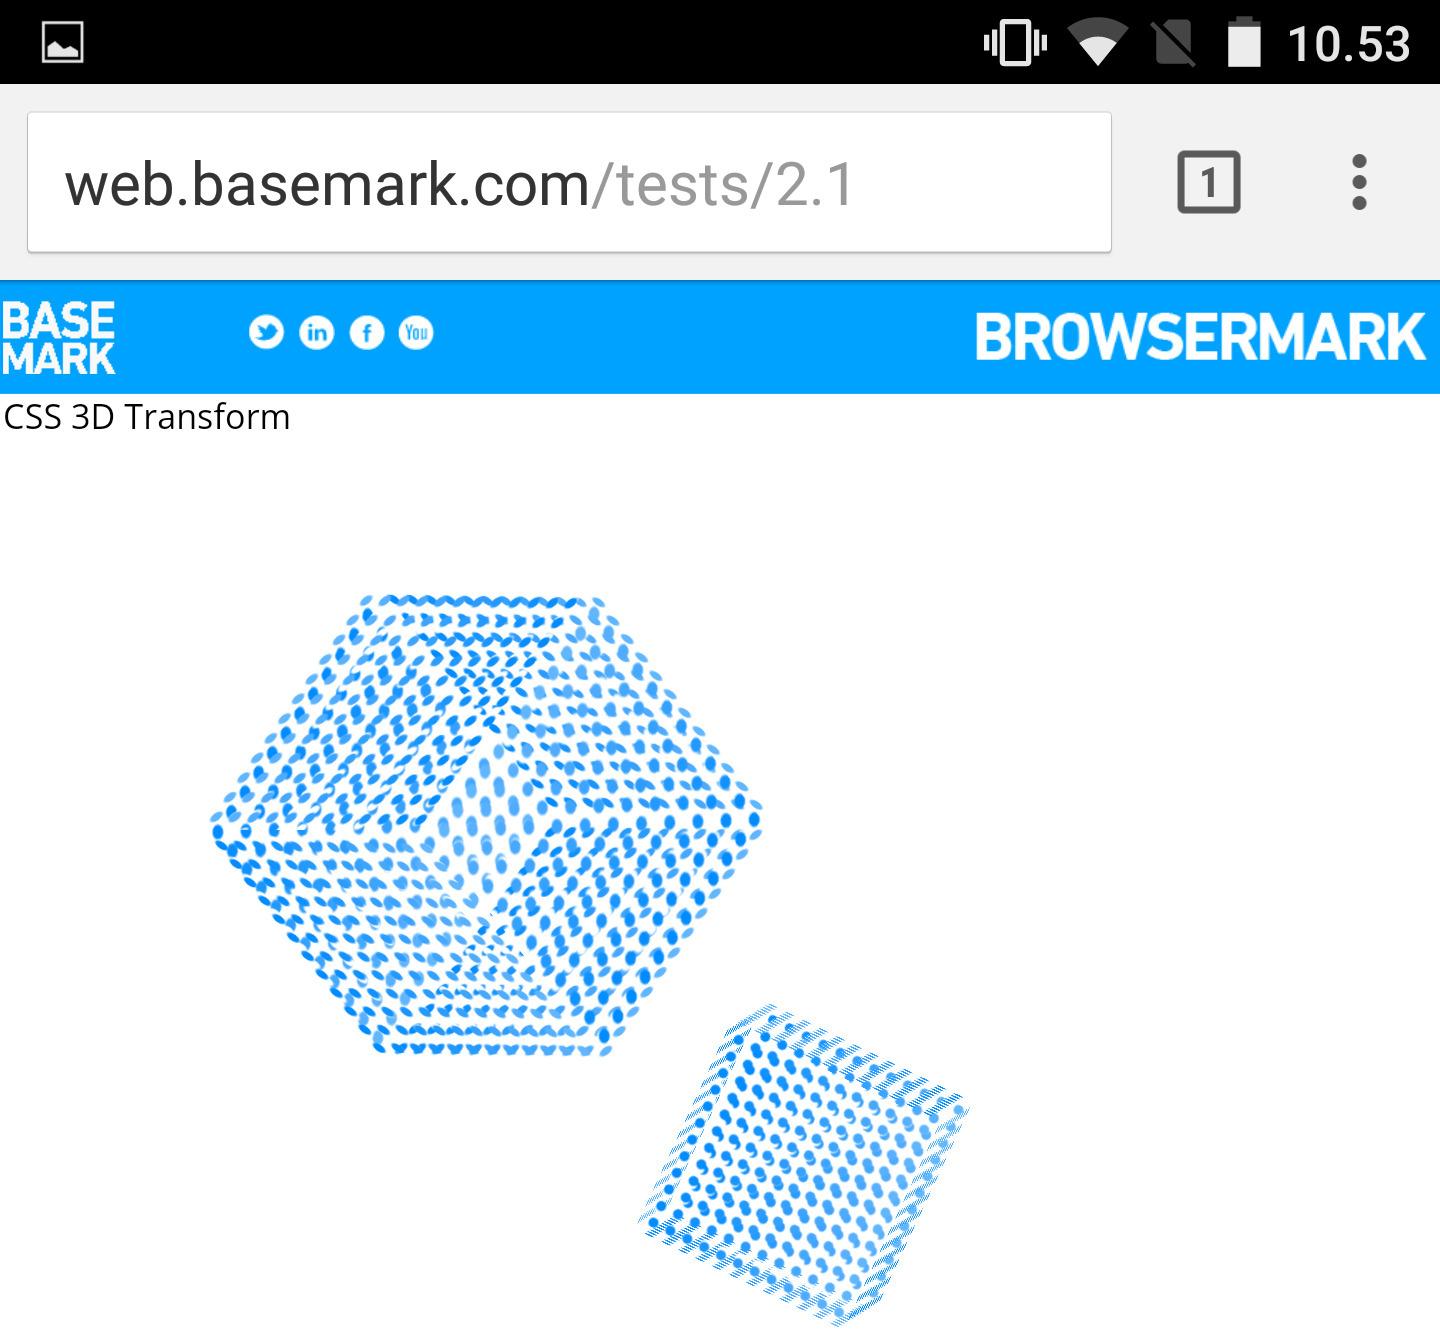 Browsermark måler CSS og HTML5-ytelse samt generell responsivitet i nettleseren.